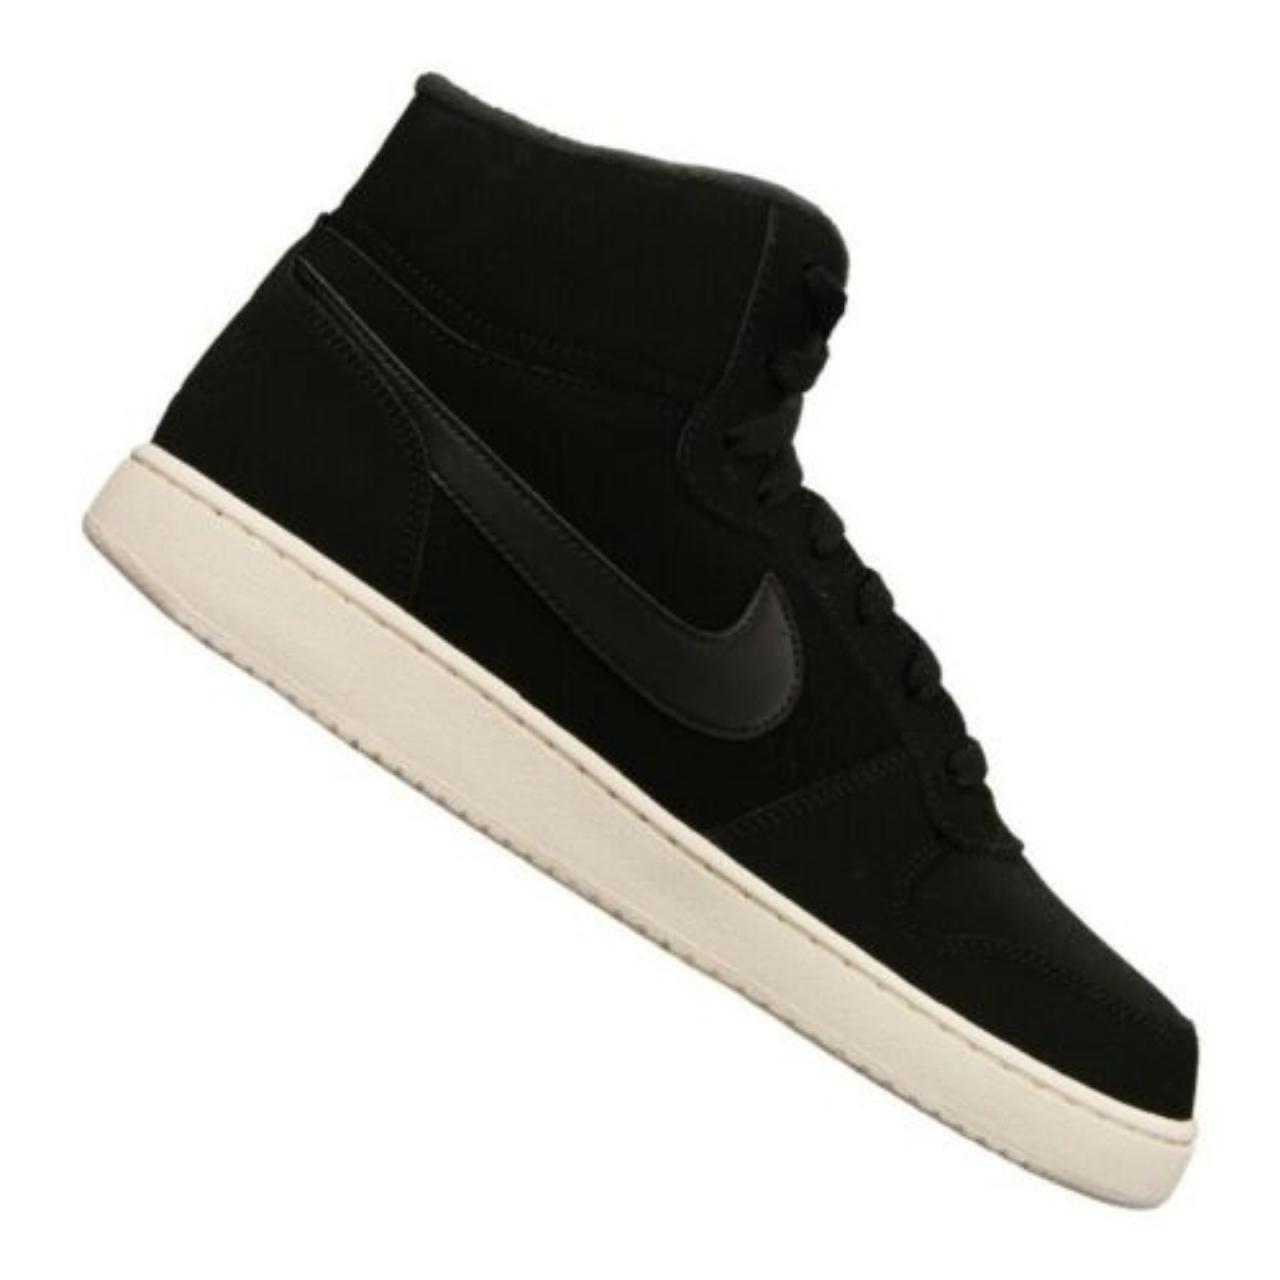 Product Image 2 - Nike Ebernon Mid Se Shoe